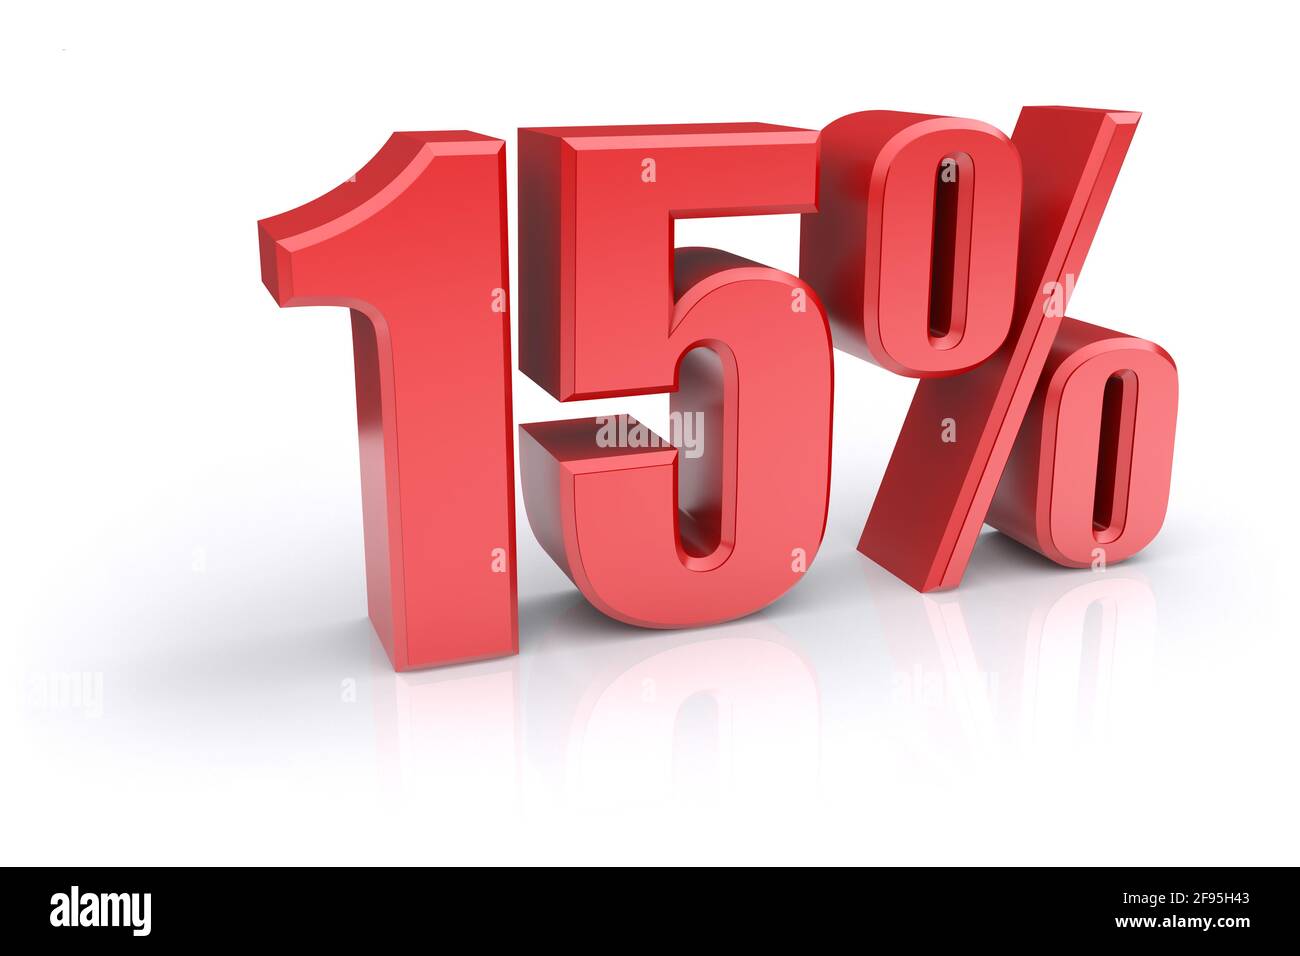 Icona rossa del tasso percentuale del 15% su sfondo bianco. immagine 3d rappresentata Foto Stock